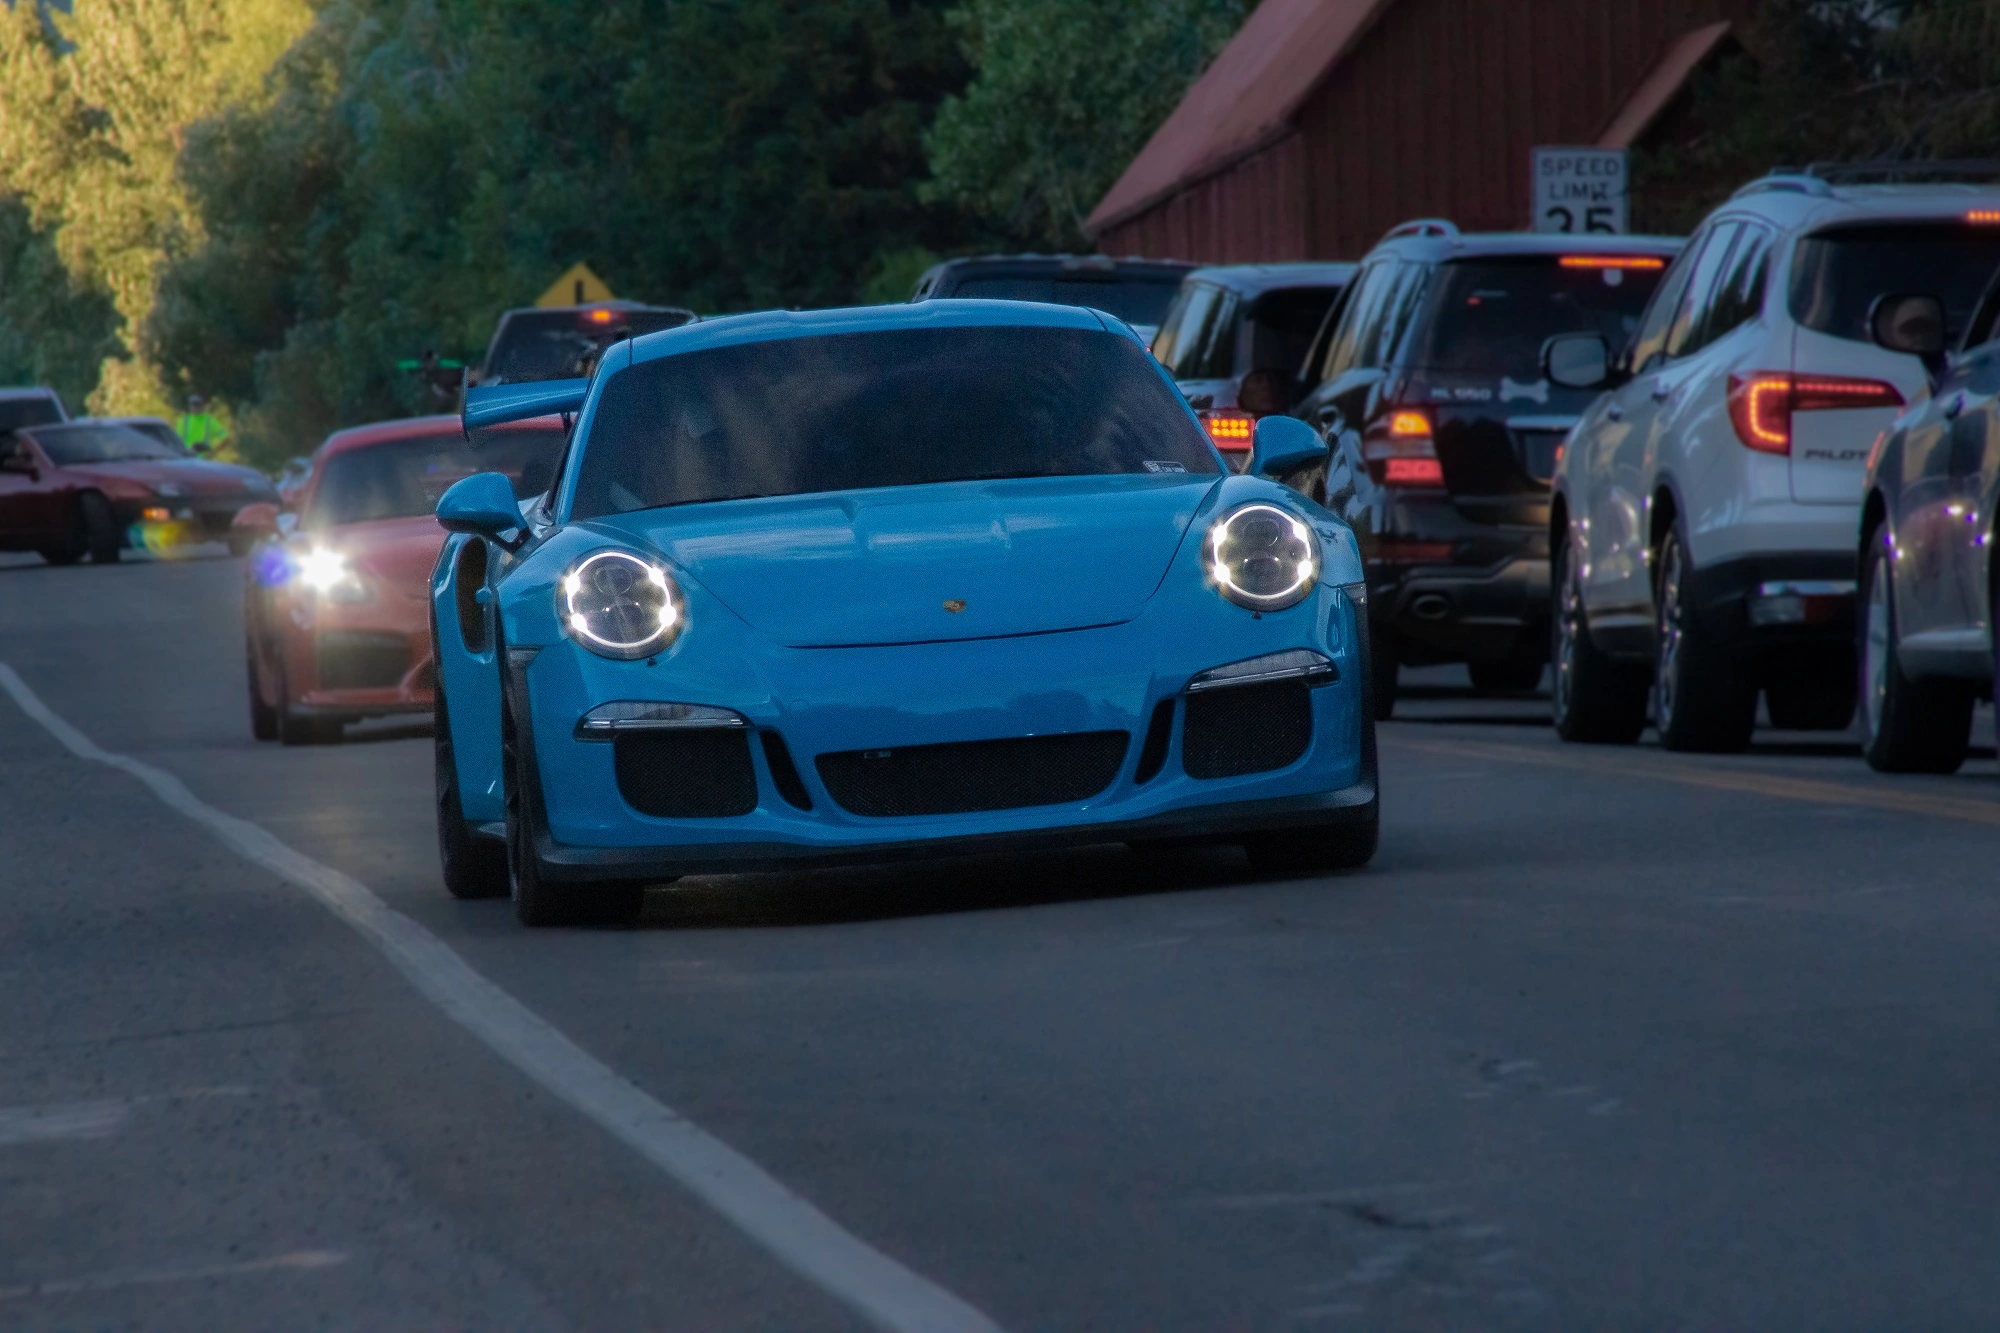 Porsche 911s, Supercars Unleashed at the 2022 Sun Valley Tour de Force!